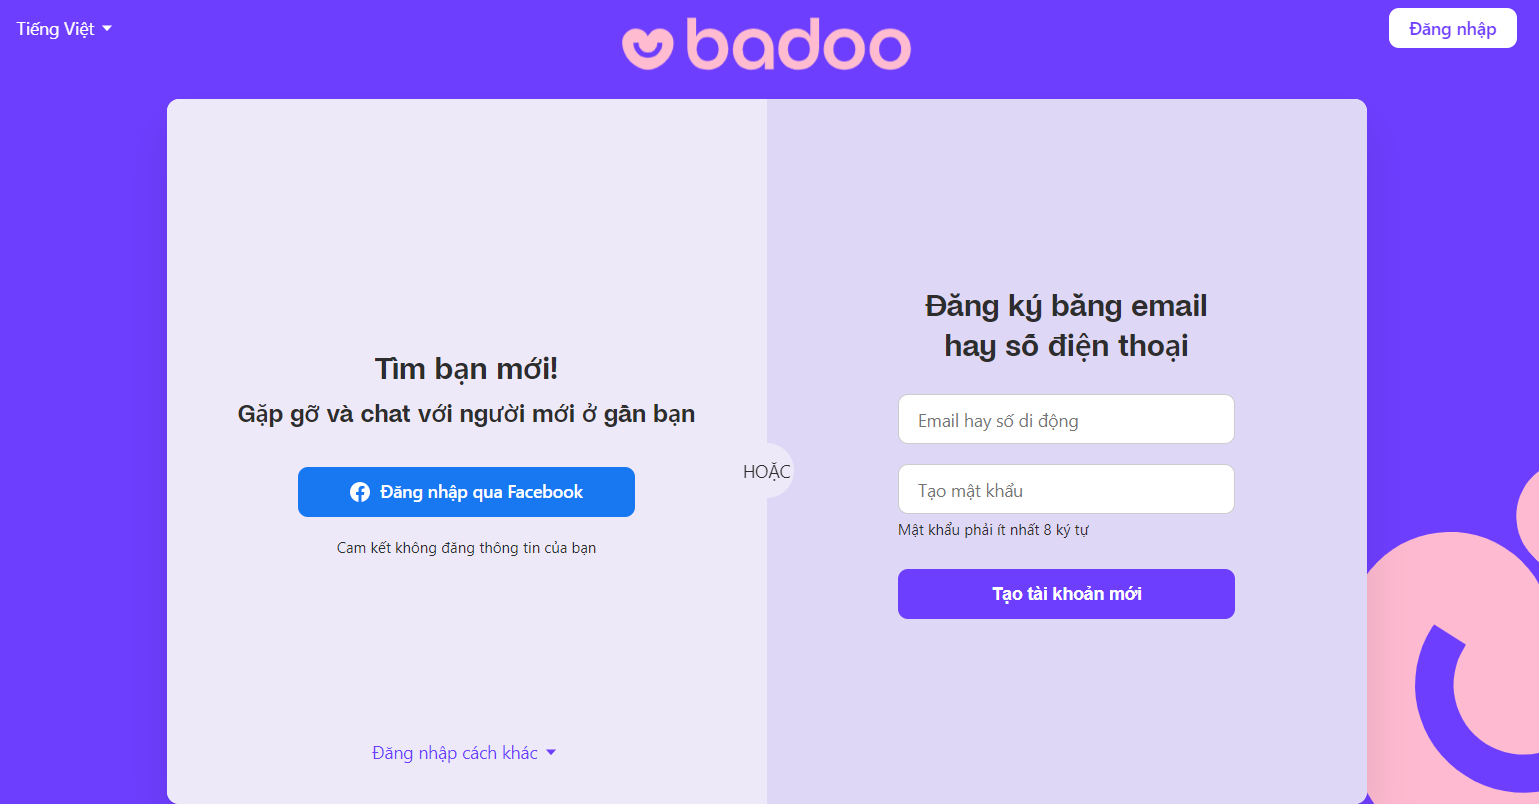 Badoo ứng dụng đang hoạt động tốt trên Fptshop.com.vn. Với tính năng đặc biệt ký tự của nó, ứng dụng Badoo là lựa chọn tuyệt vời cho những người muốn tìm kiếm người yêu. Xem hình ảnh liên quan để khám phá thêm về tính năng tuyệt vời này.